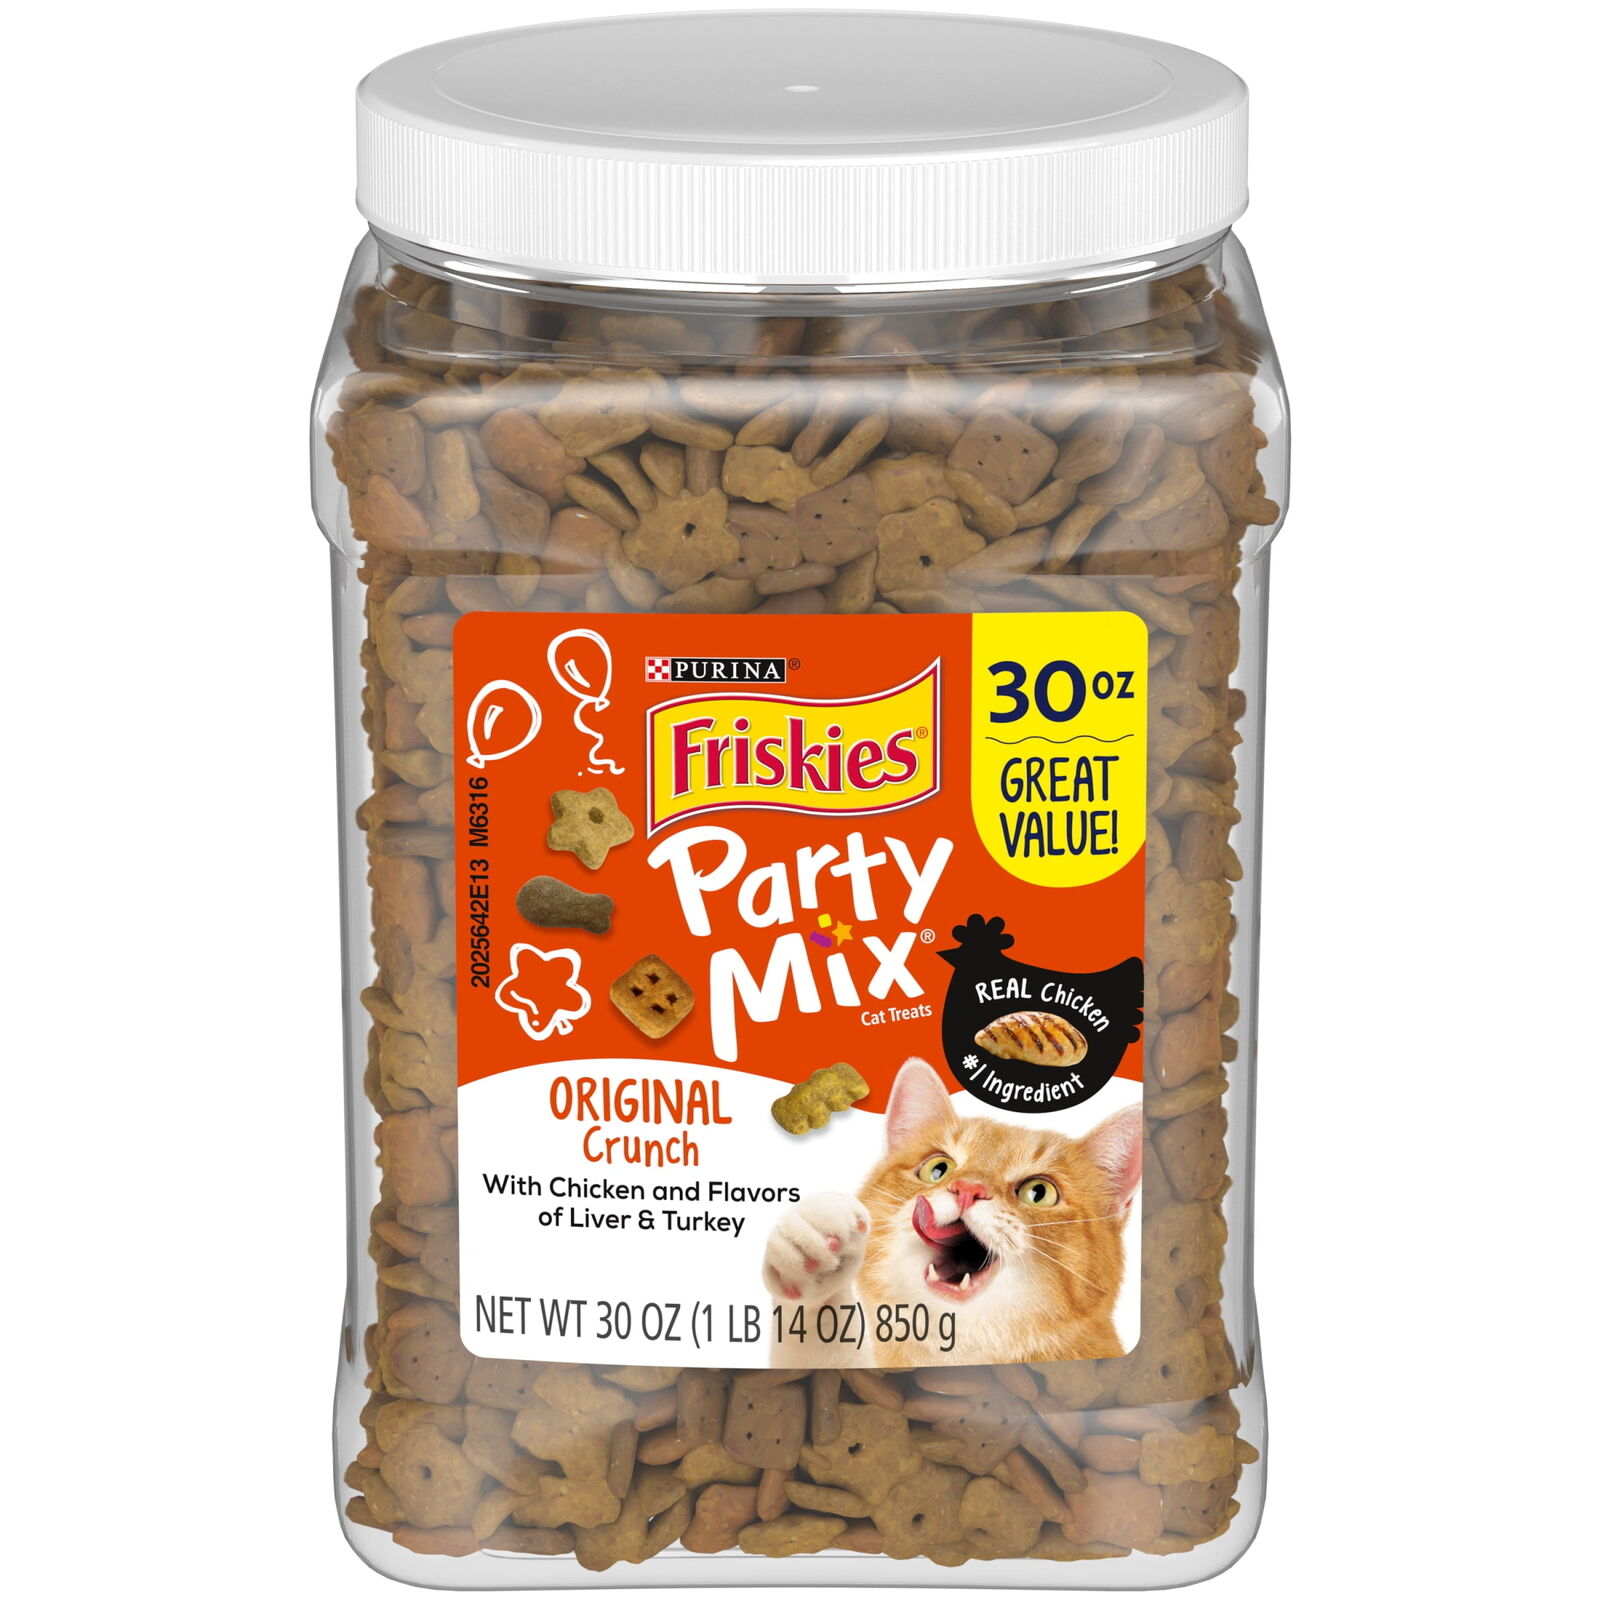 Purina Friskies Party Mix Cat Treats, Original Flavor, 30 oz Jar